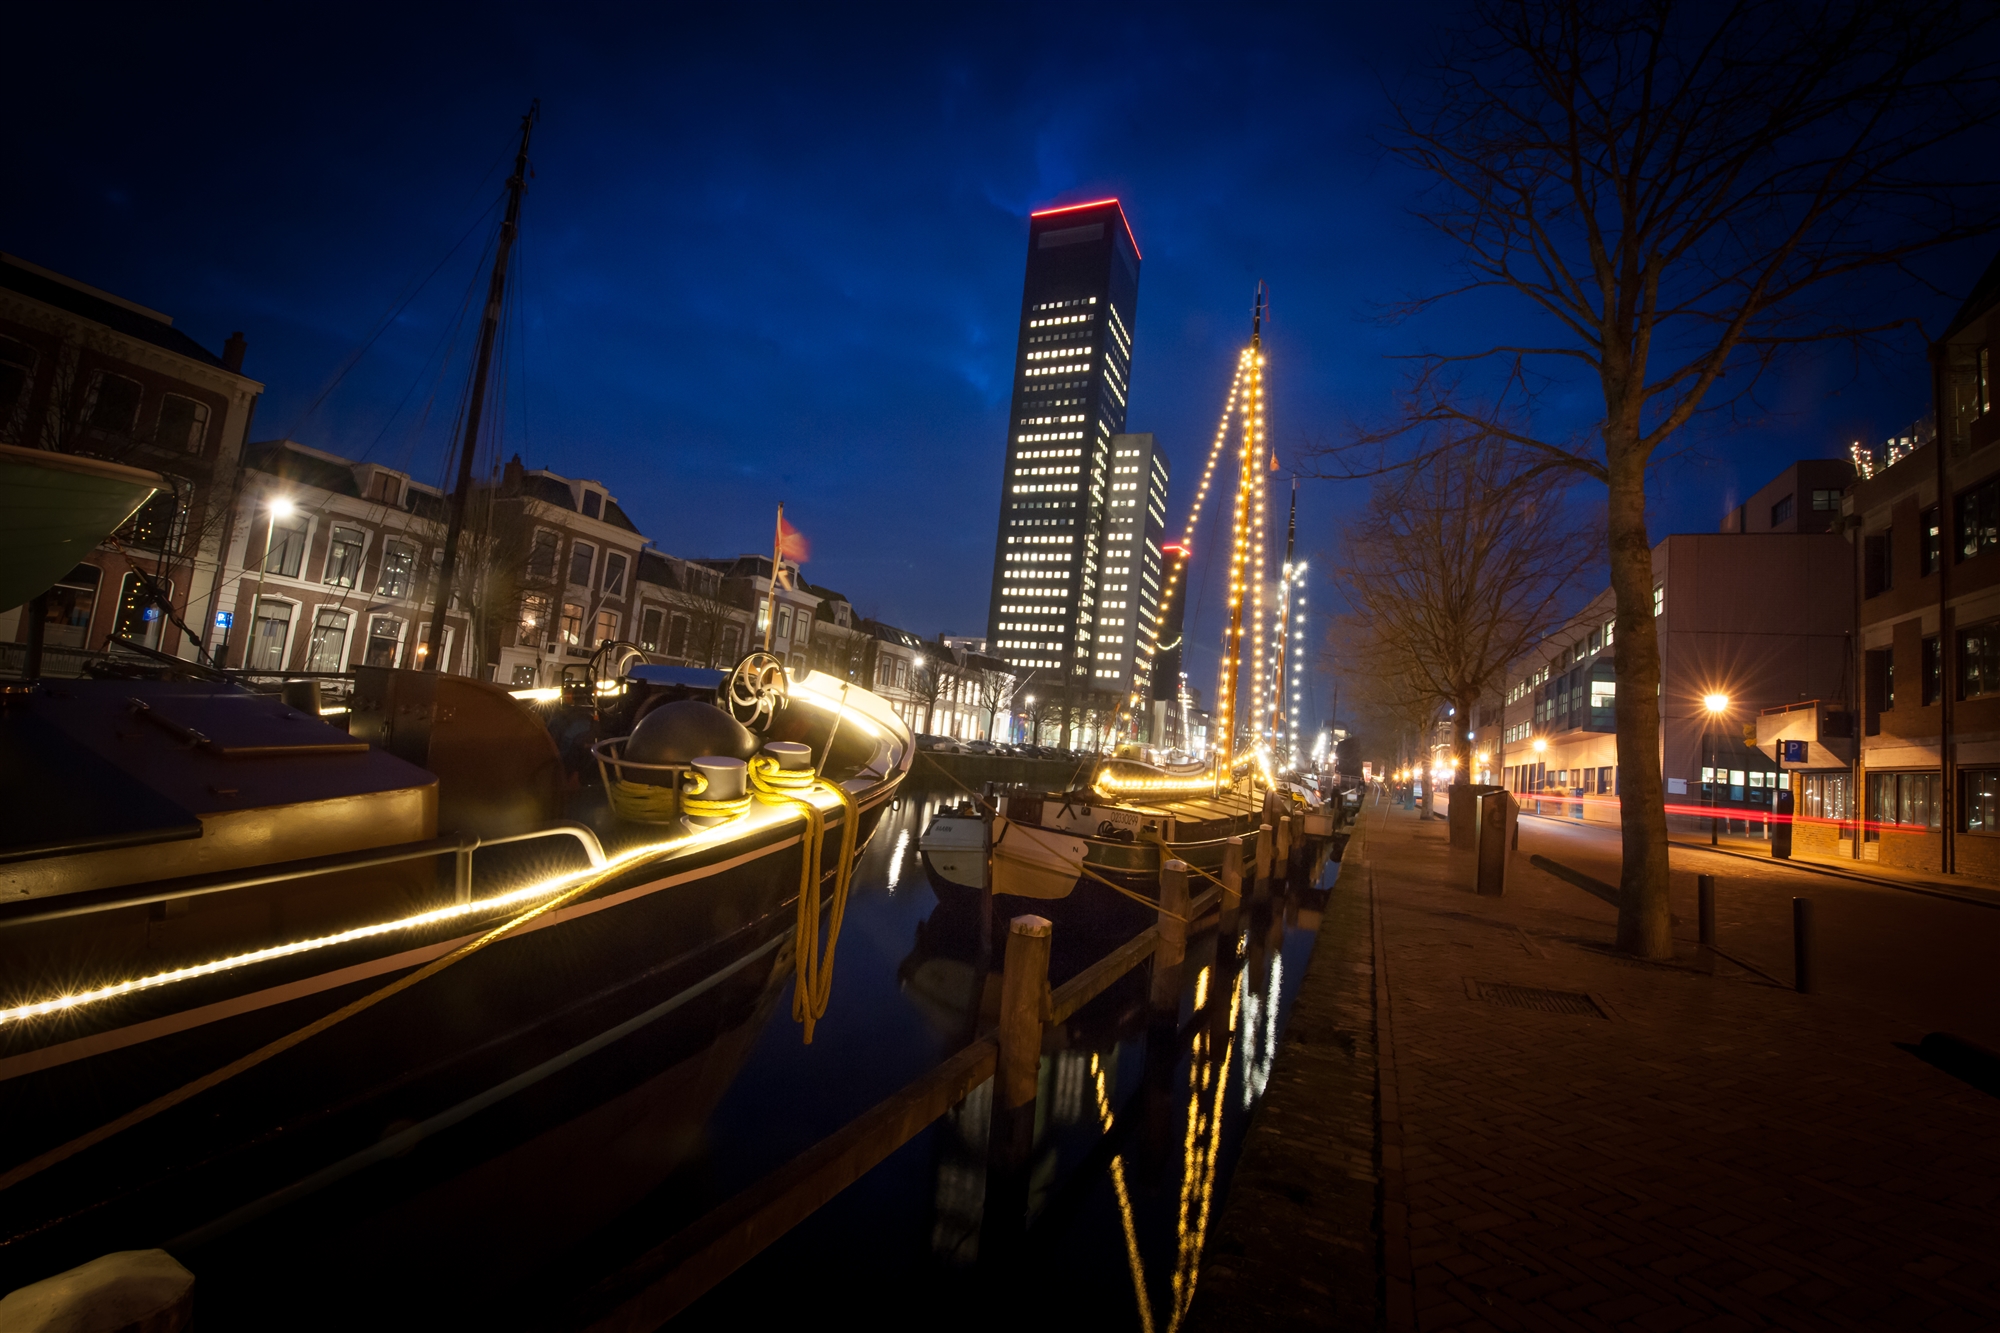 Leeuwarden achmeatoren nacht schepen verlichting stad Friesland